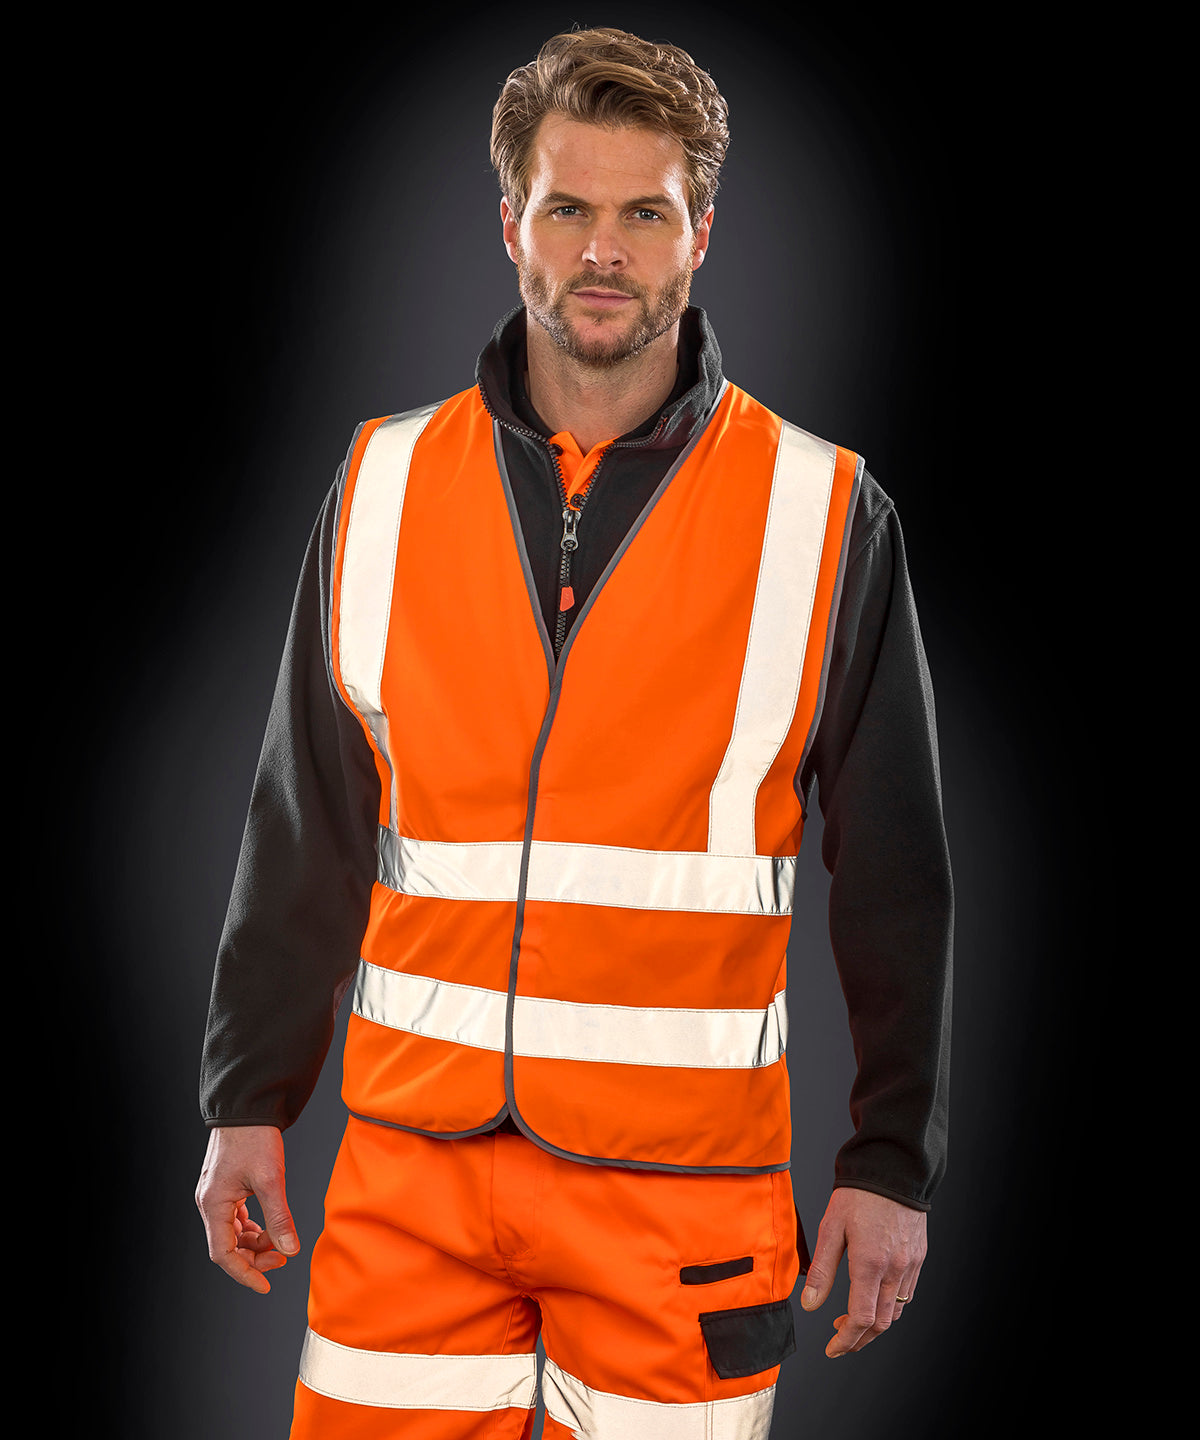 Öryggisvesti - Core Safety Motorway Vest